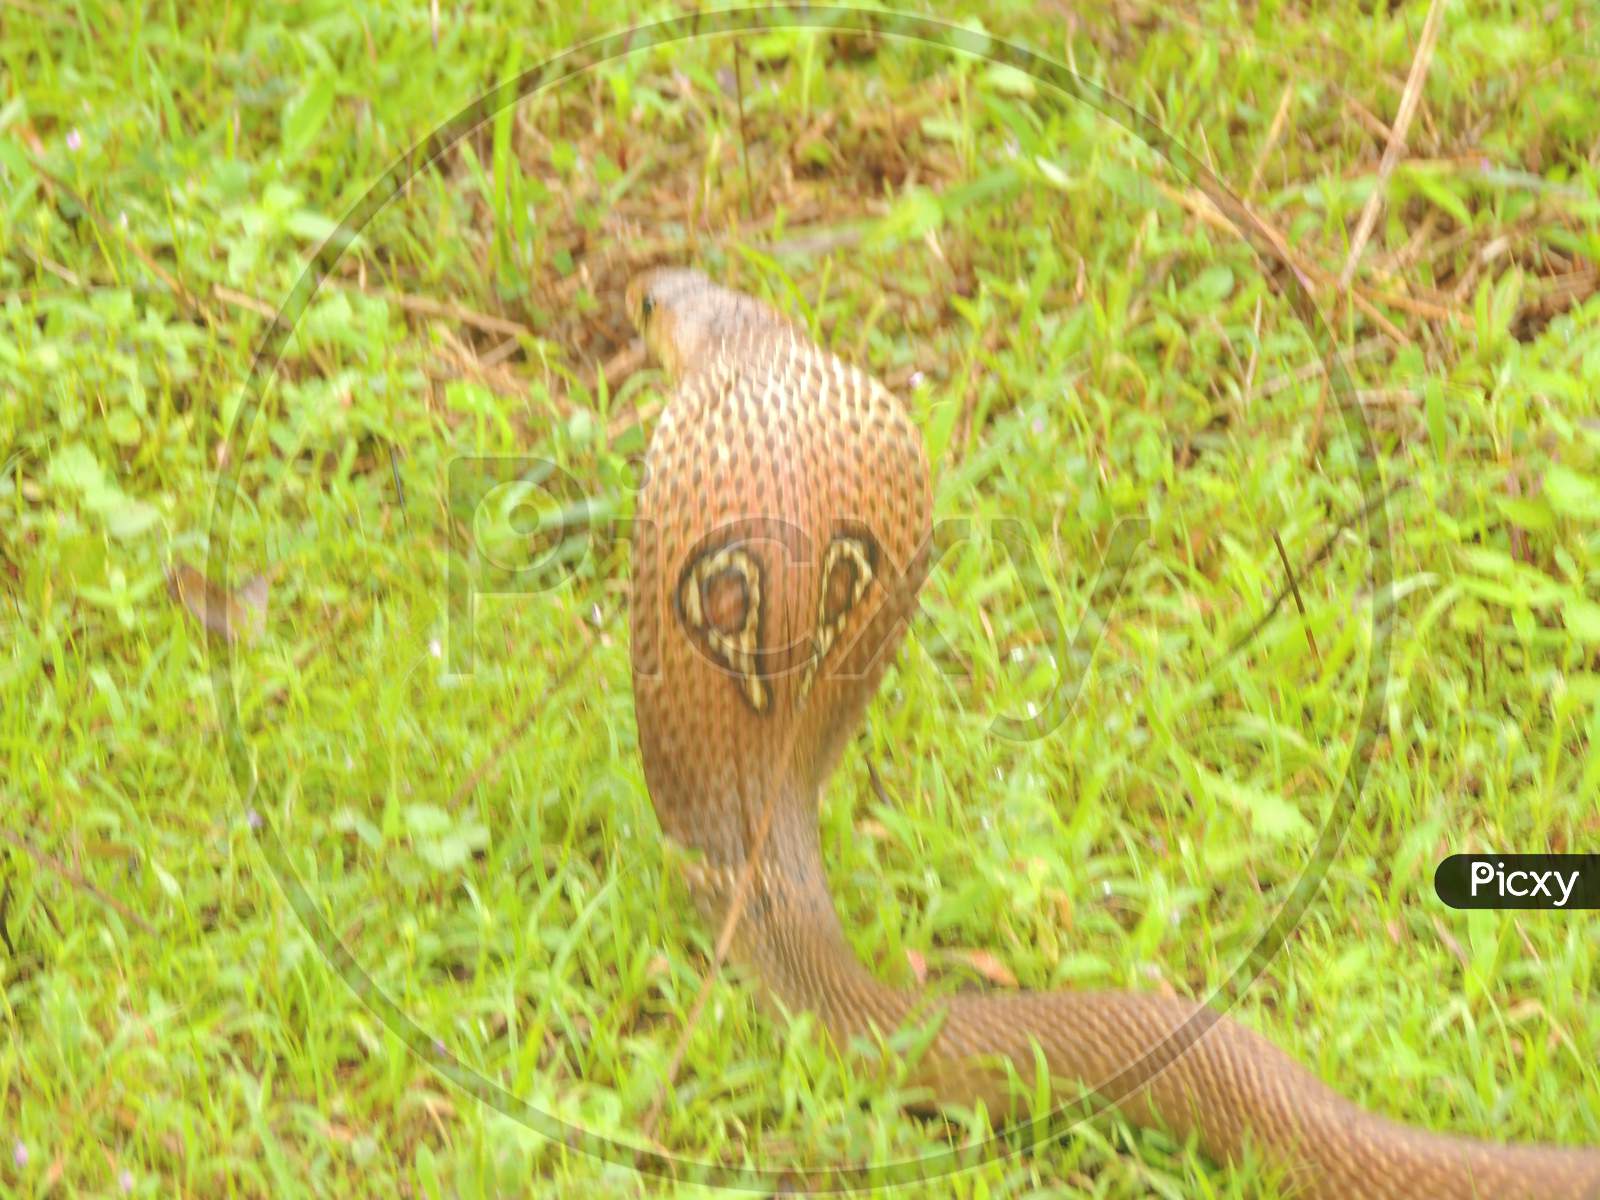 Spectacle cobra